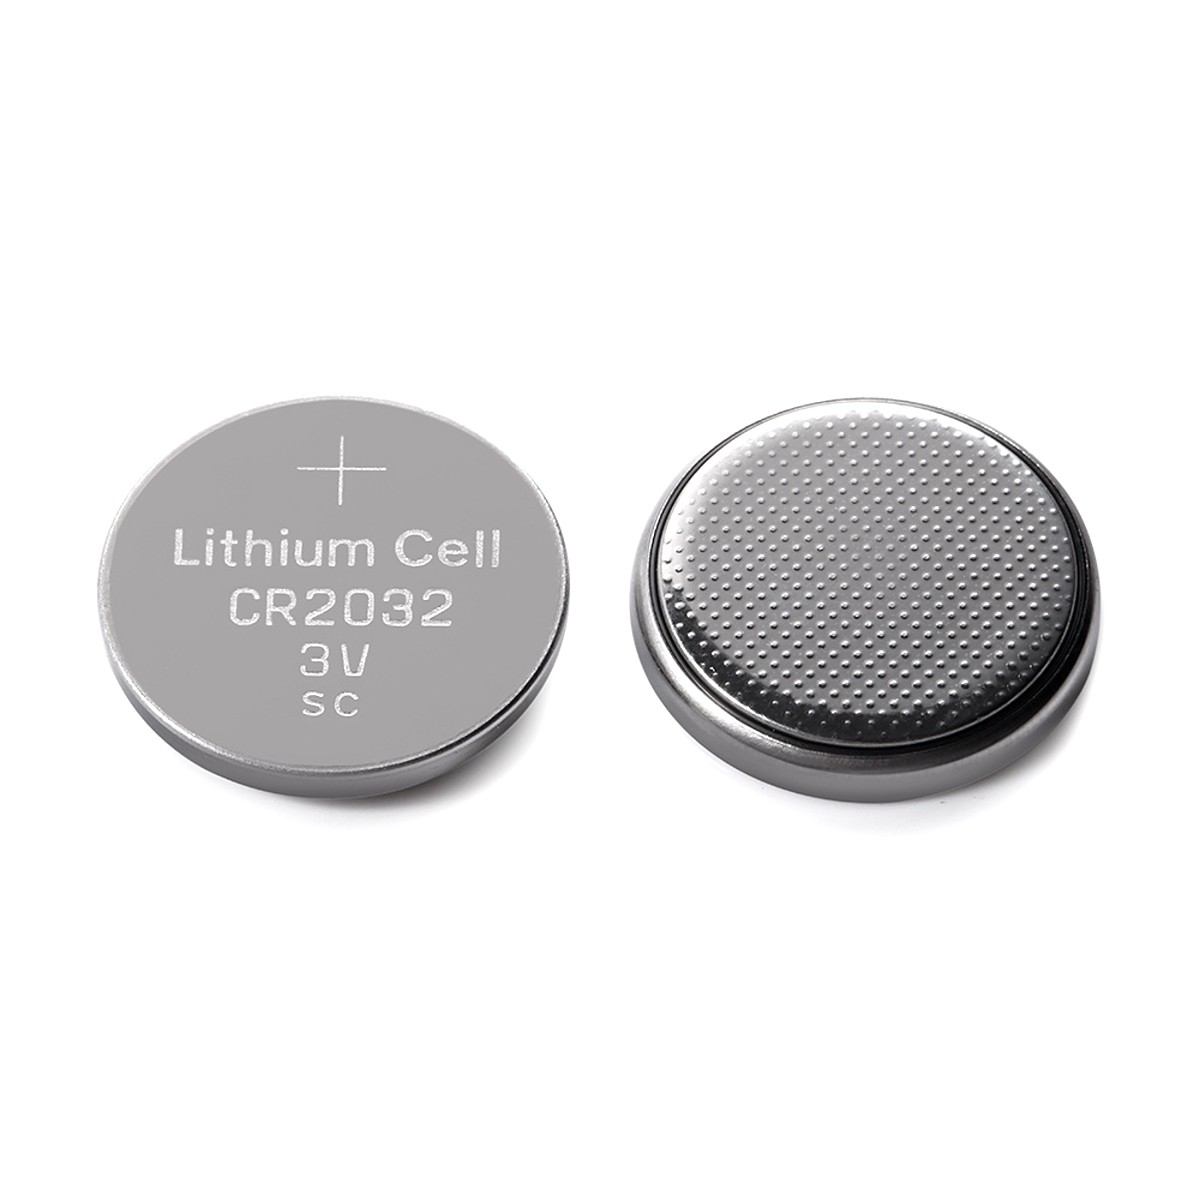 Eunicell-Pile bouton au lithium pour montre, pile bouton, 3V